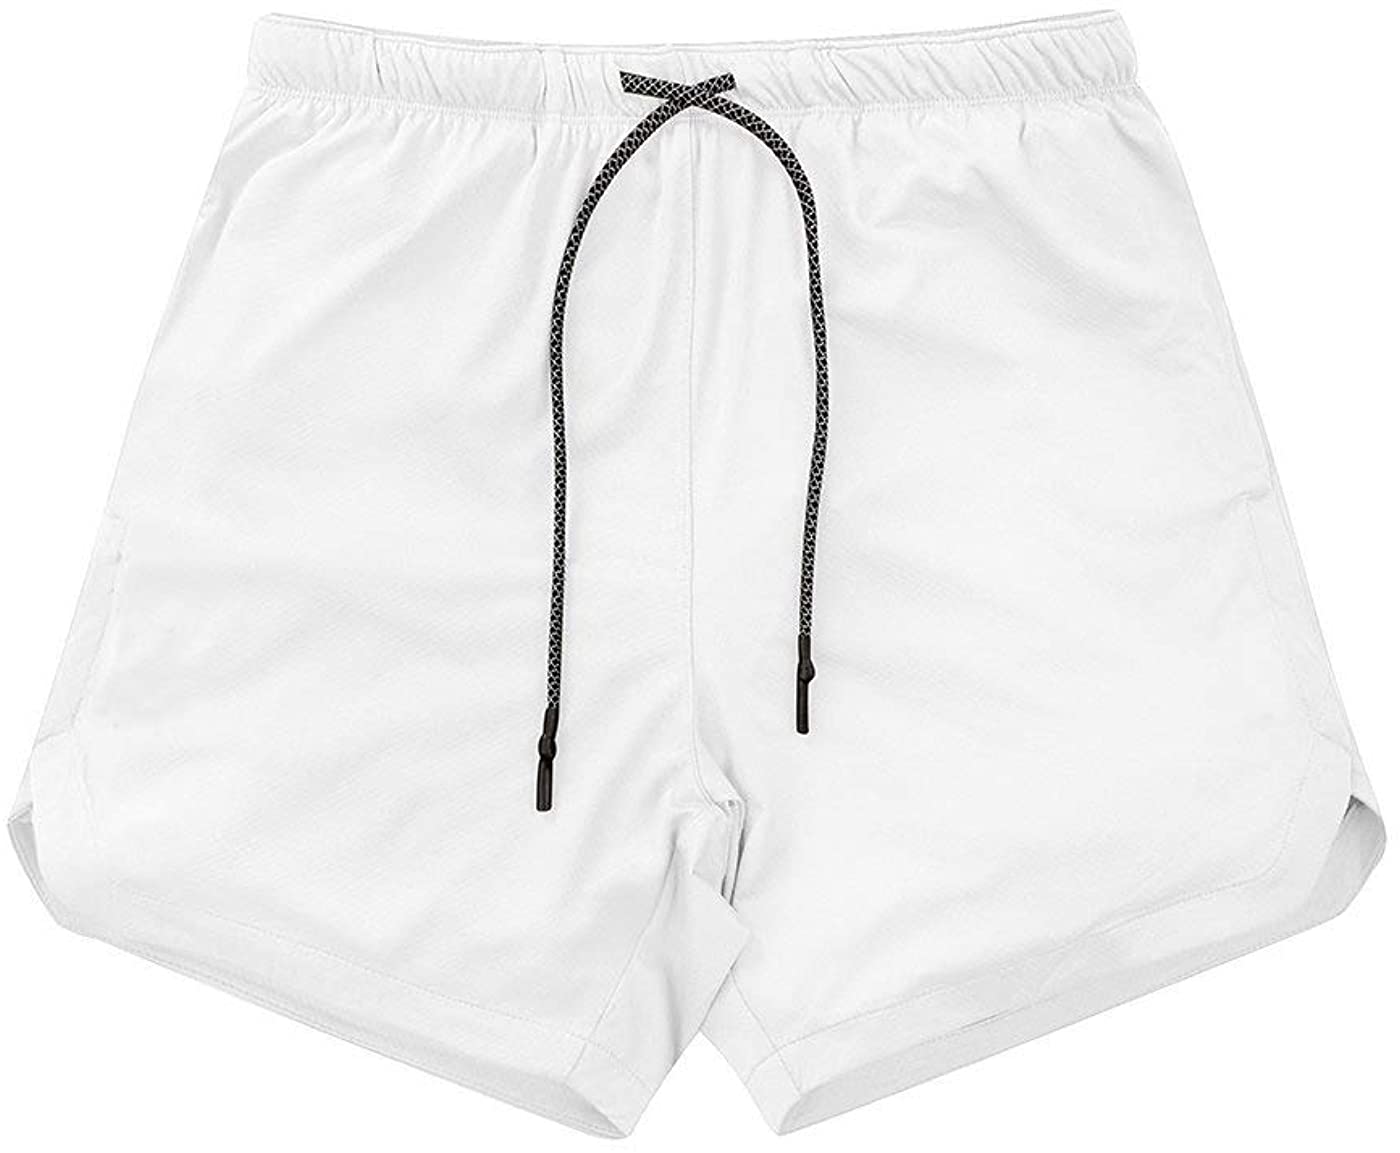 15 Amazing Boys White Athletic Shorts For 2023